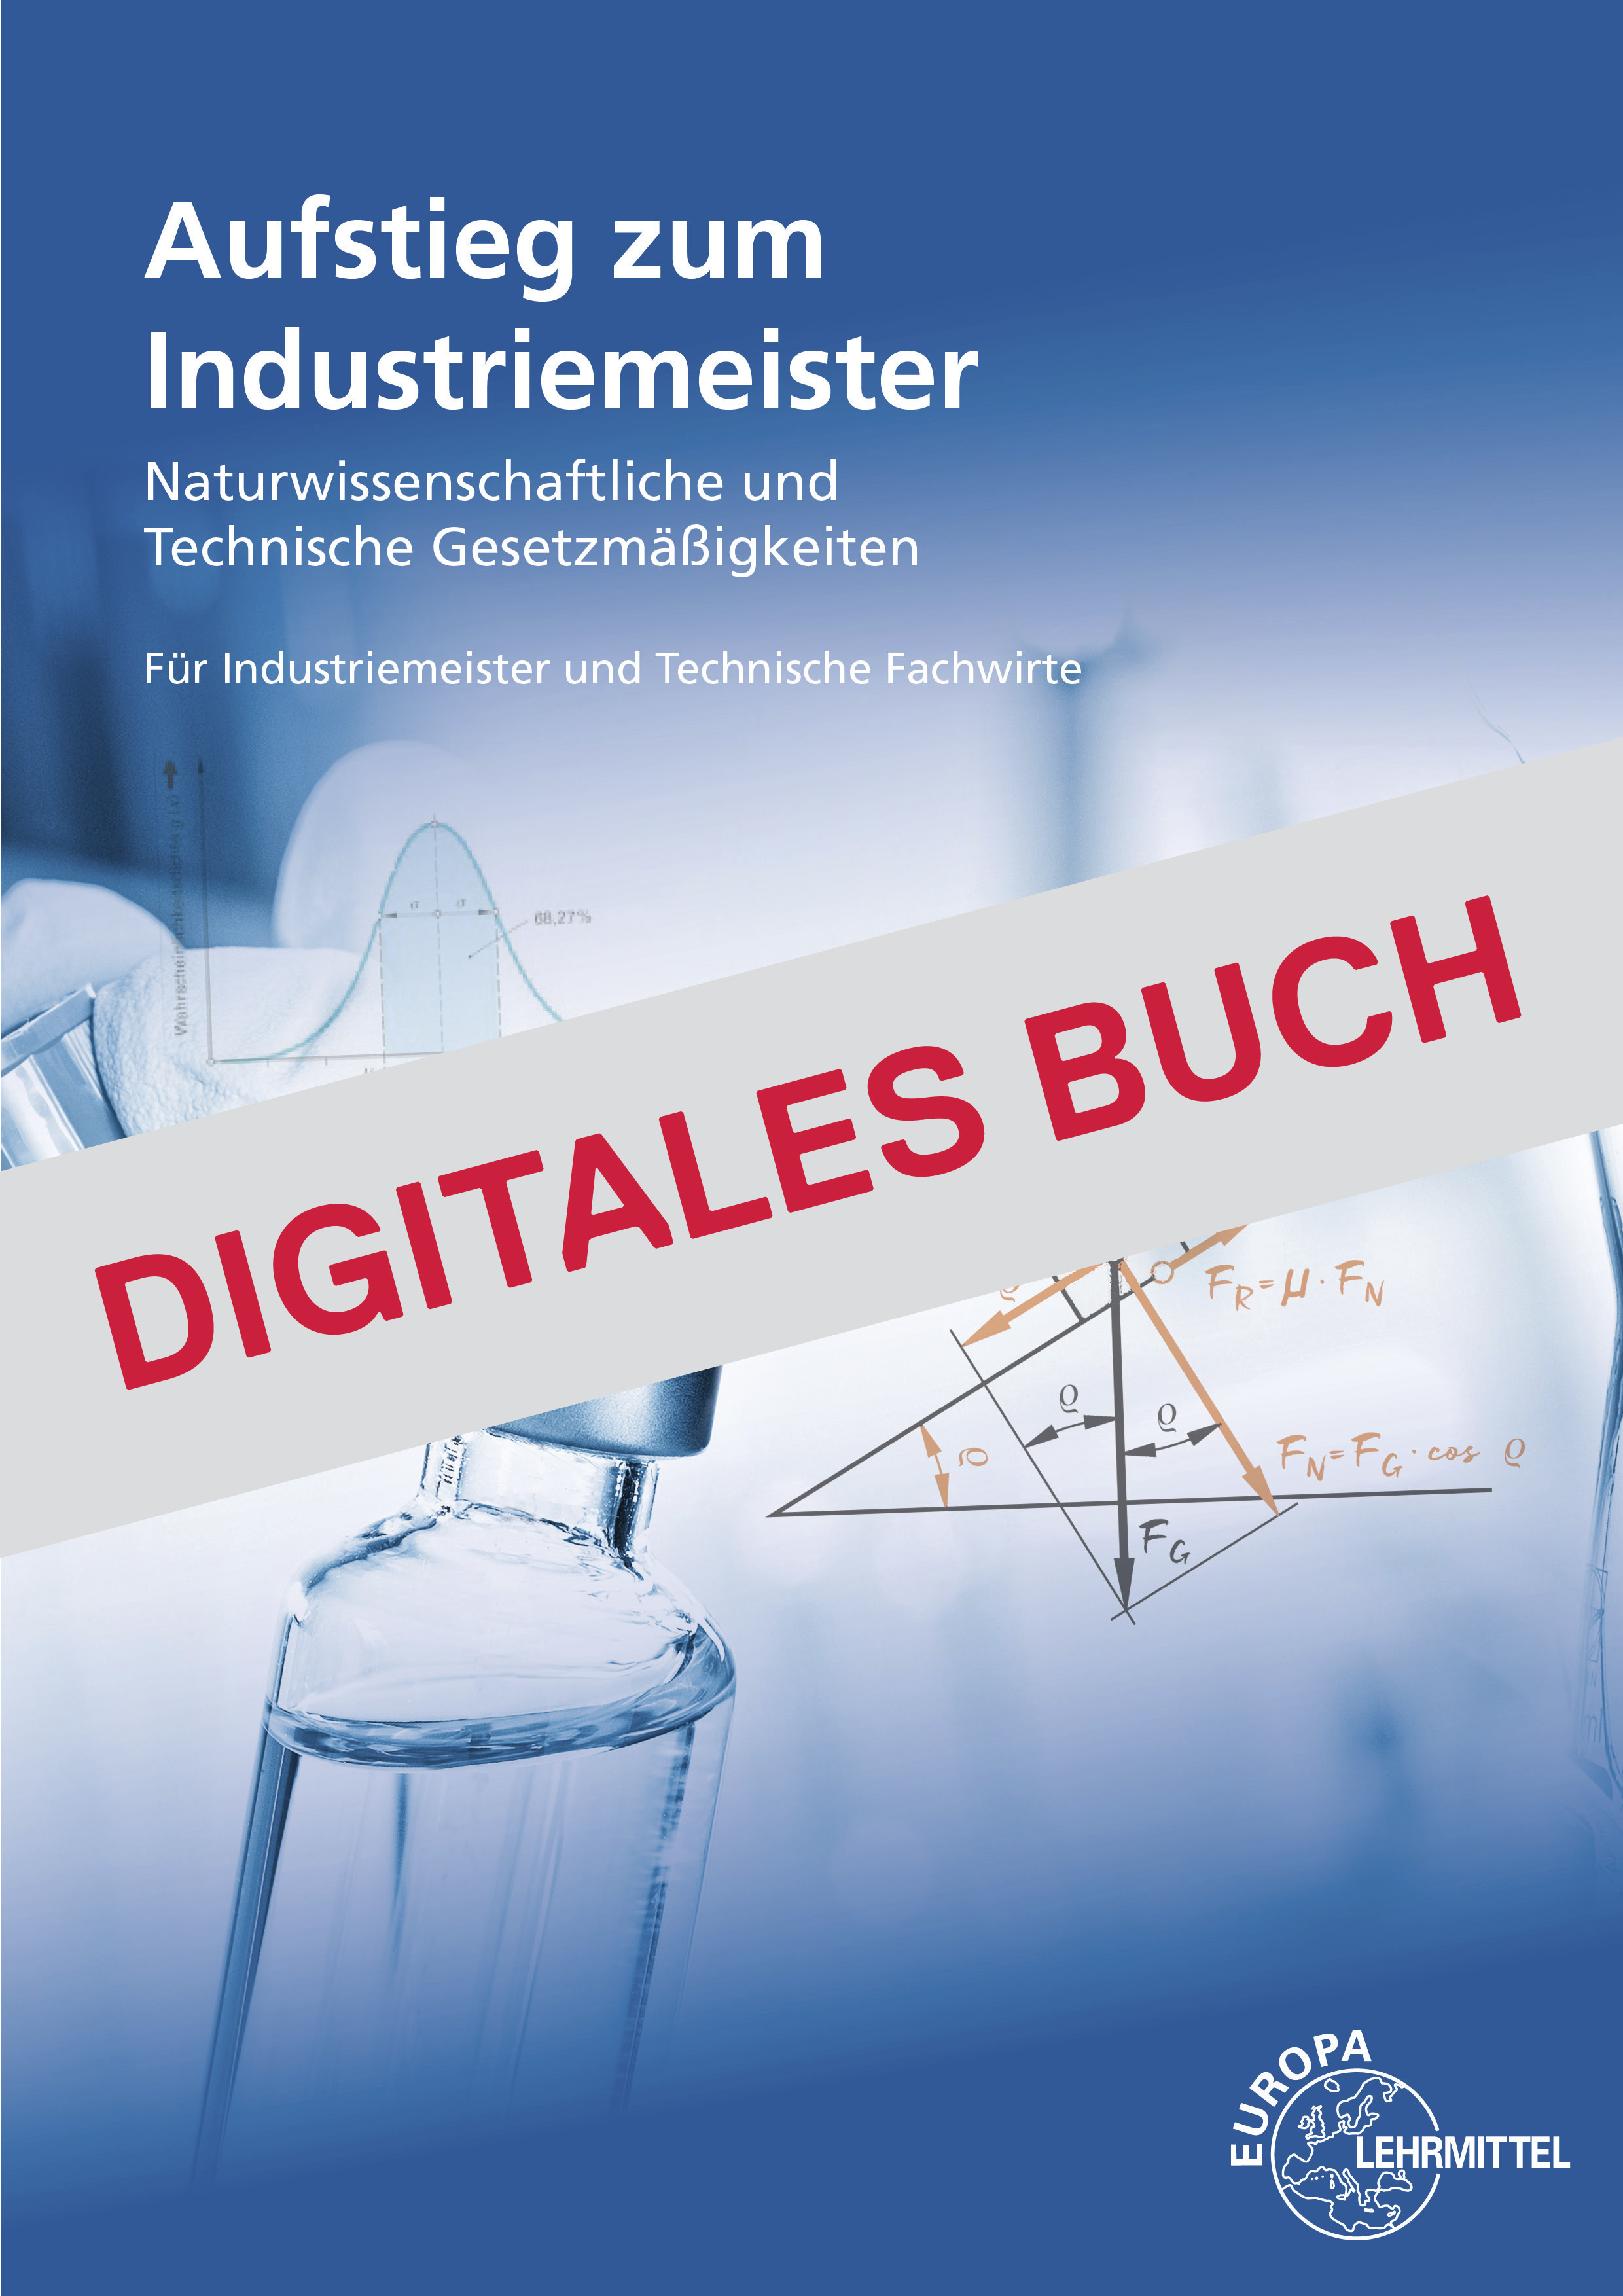 Naturwissenschaftliche und technische Gesetzm. - Digitales Buch